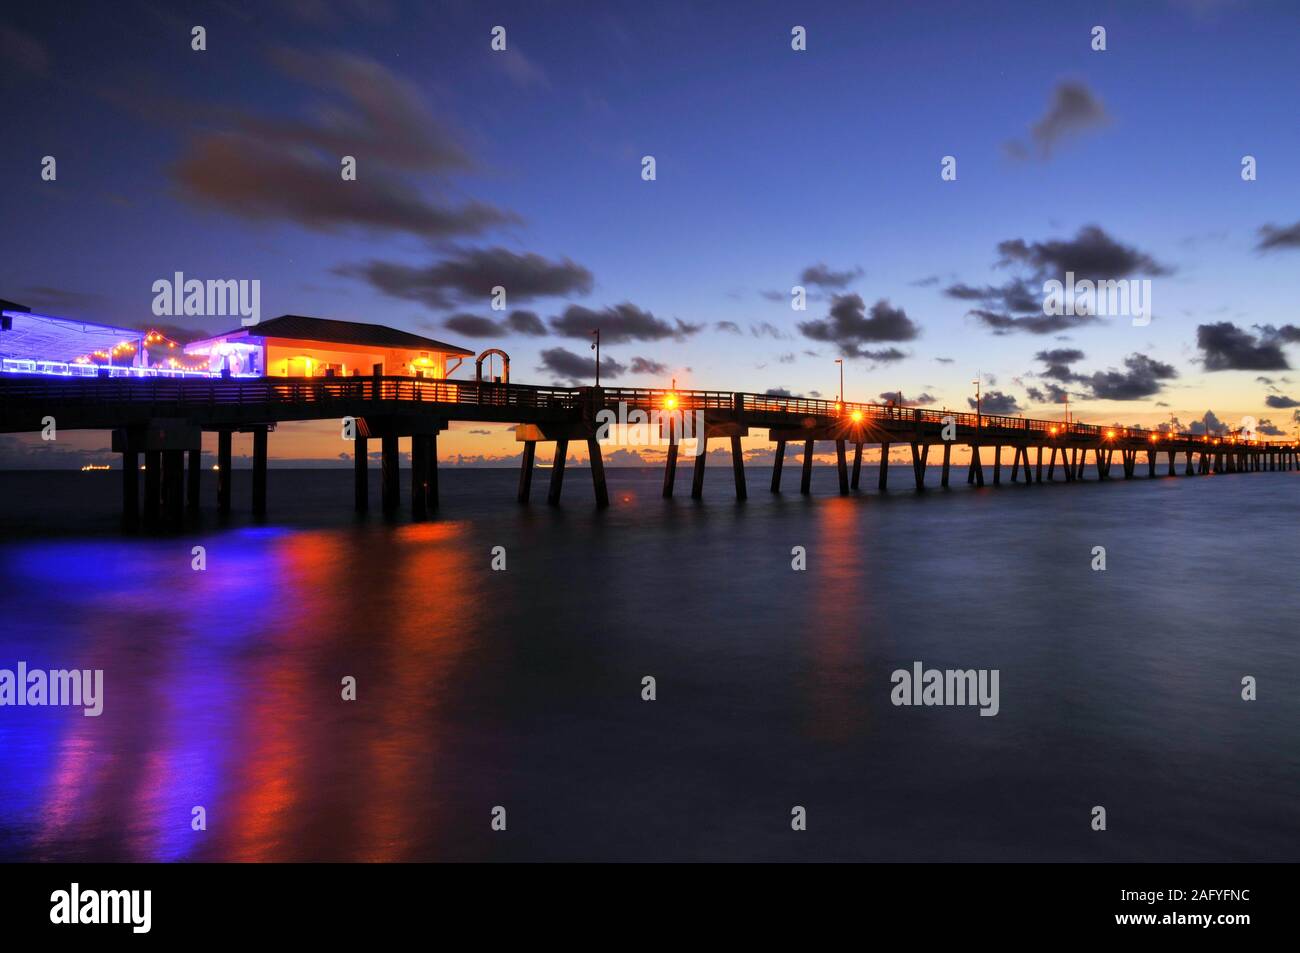 The Dania Beach Florida Pier Stock Photo